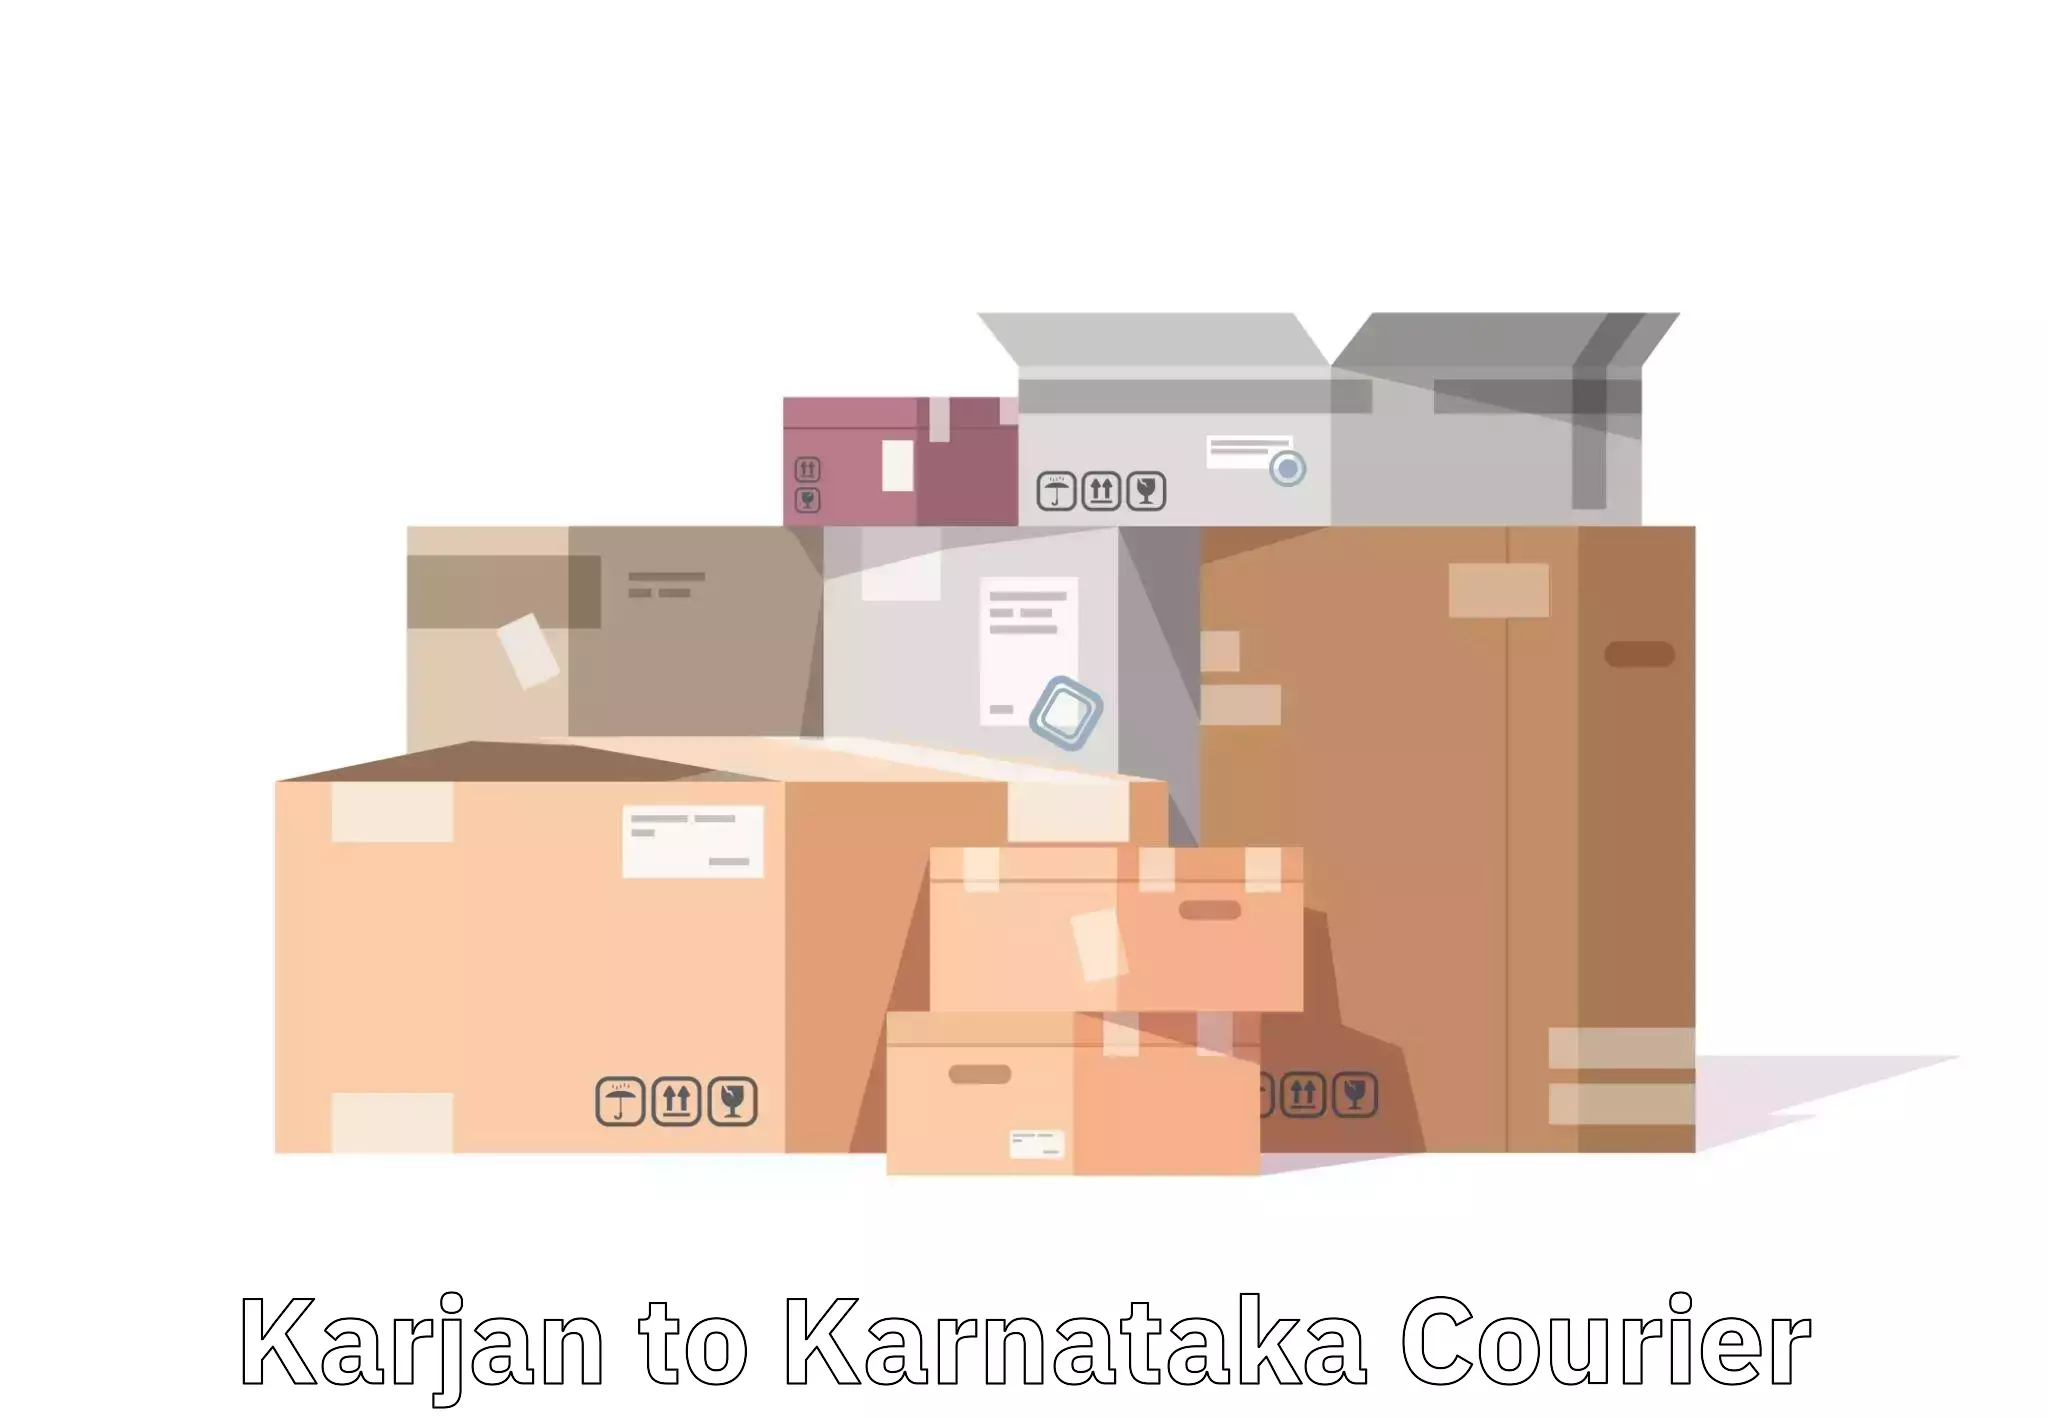 Emergency baggage service Karjan to Bengaluru